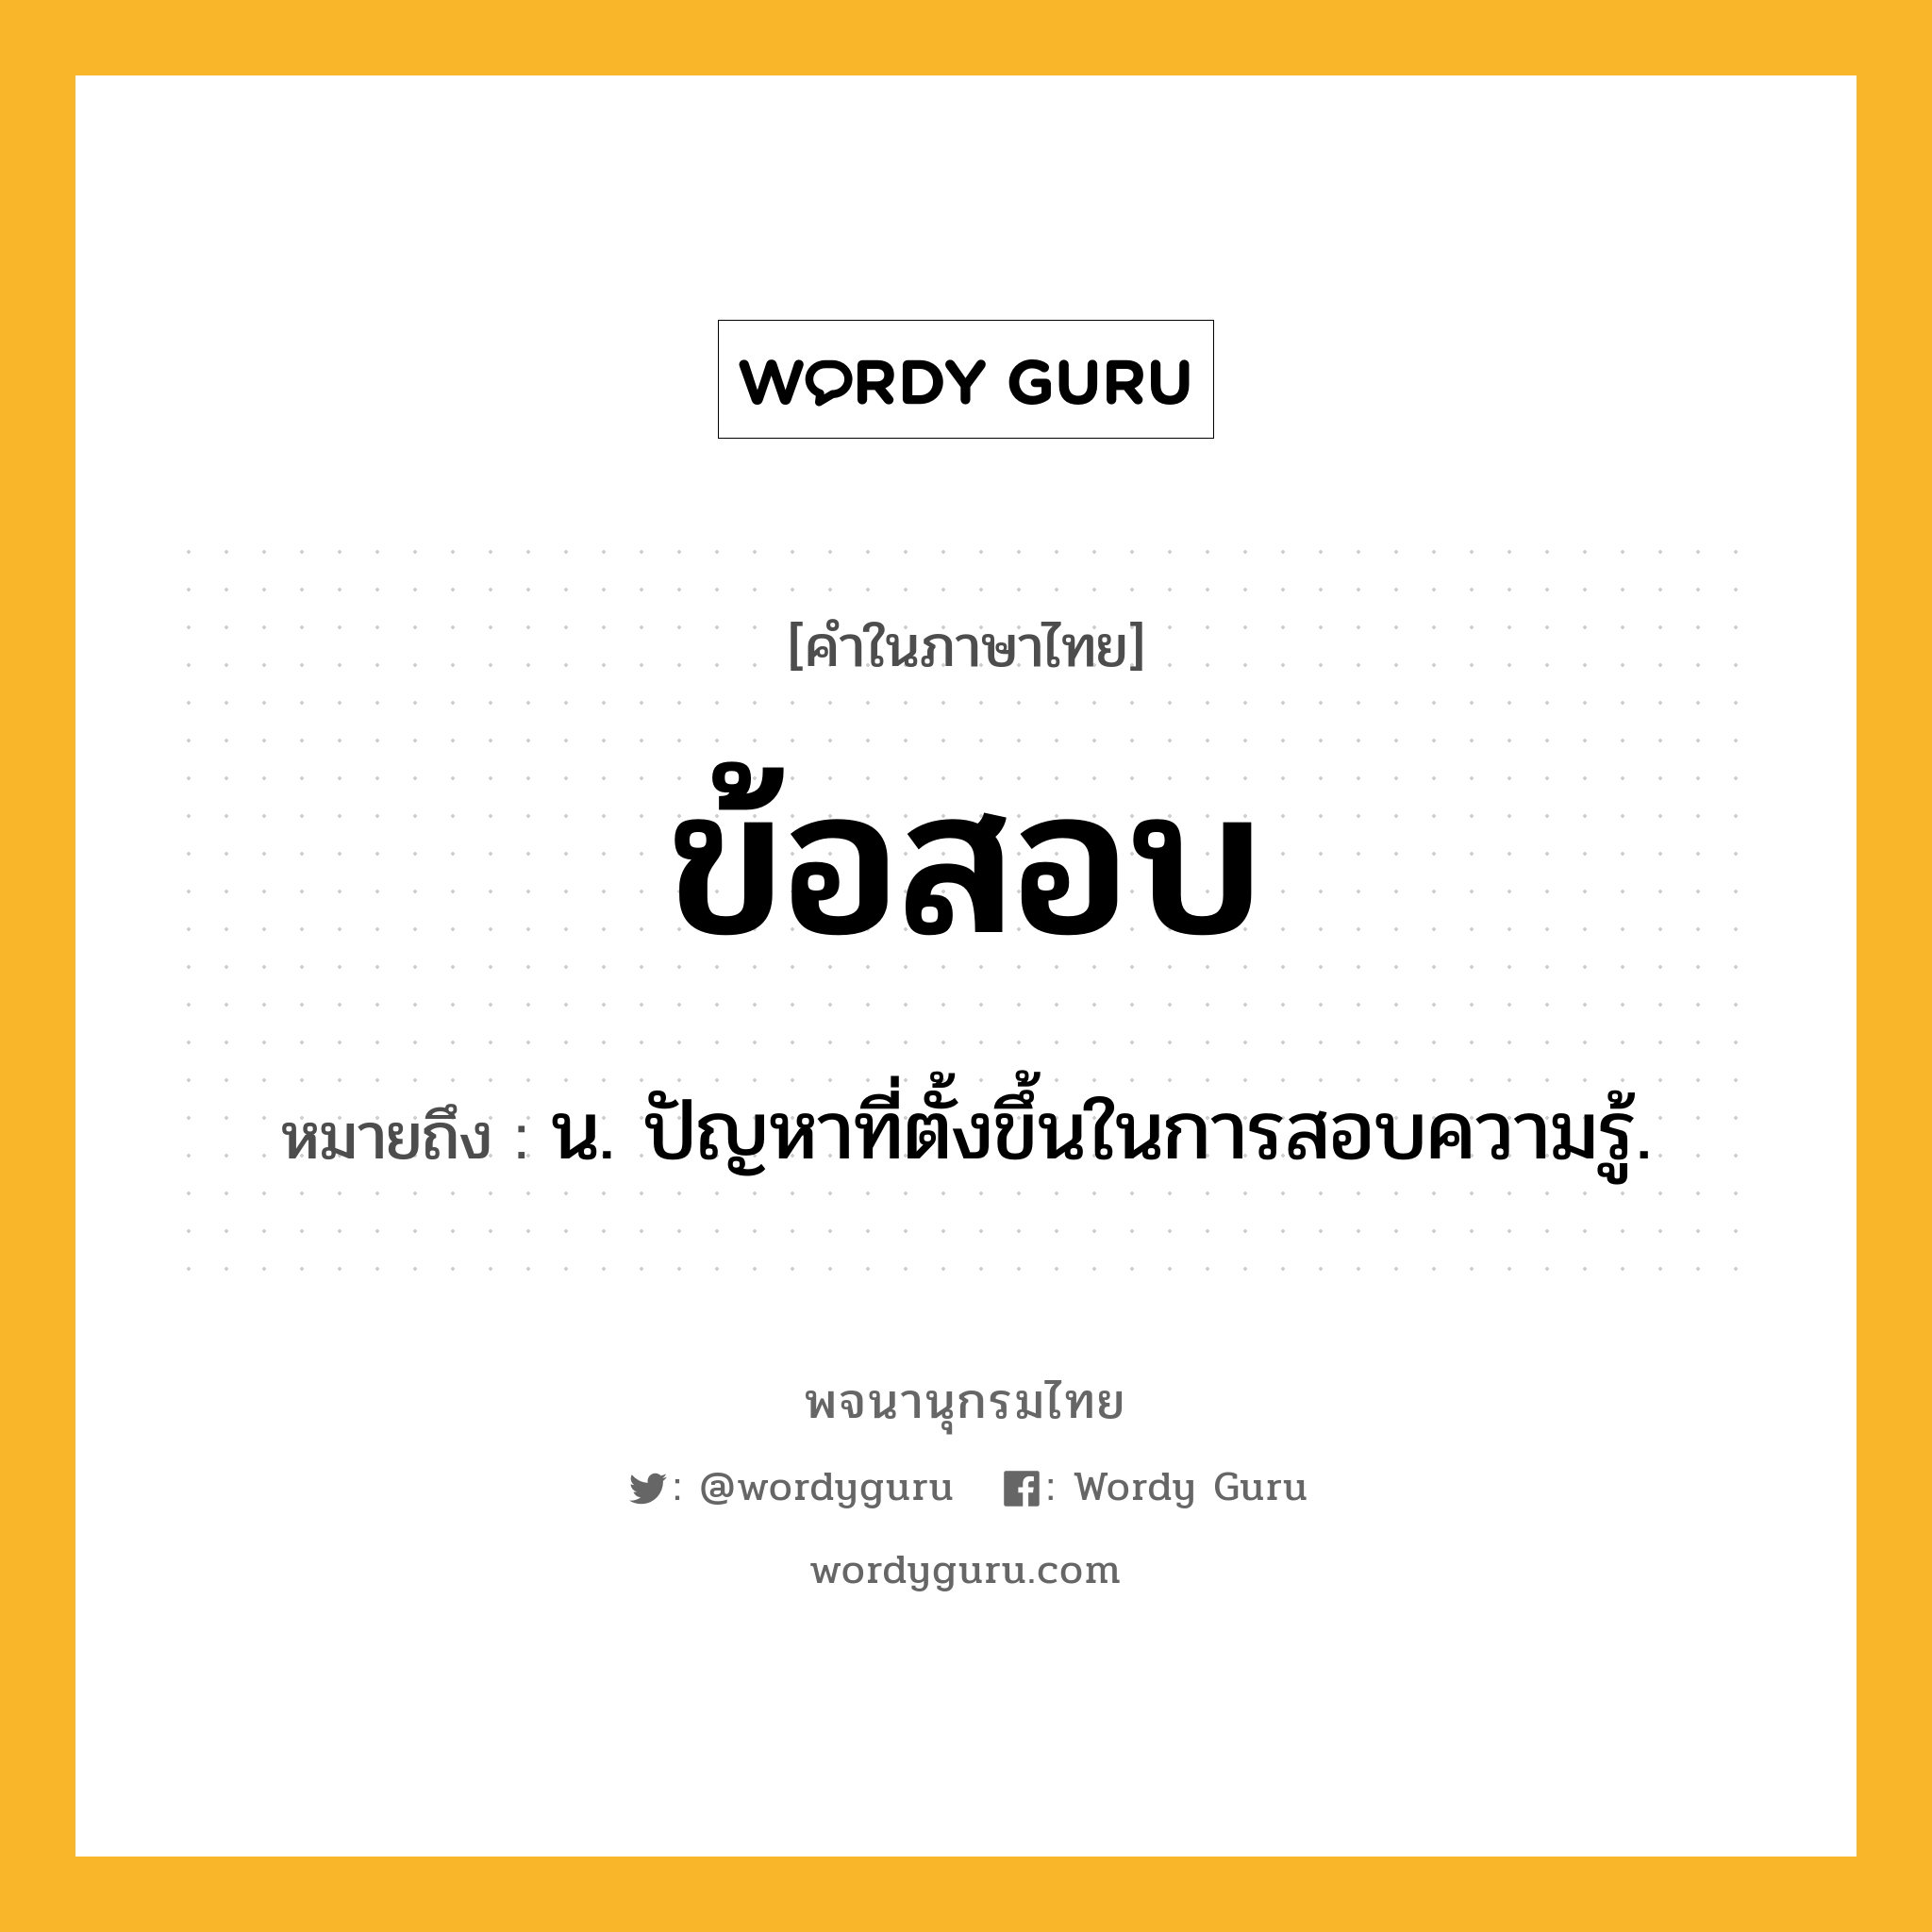 ข้อสอบ ความหมาย หมายถึงอะไร?, คำในภาษาไทย ข้อสอบ หมายถึง น. ปัญหาที่ตั้งขึ้นในการสอบความรู้.